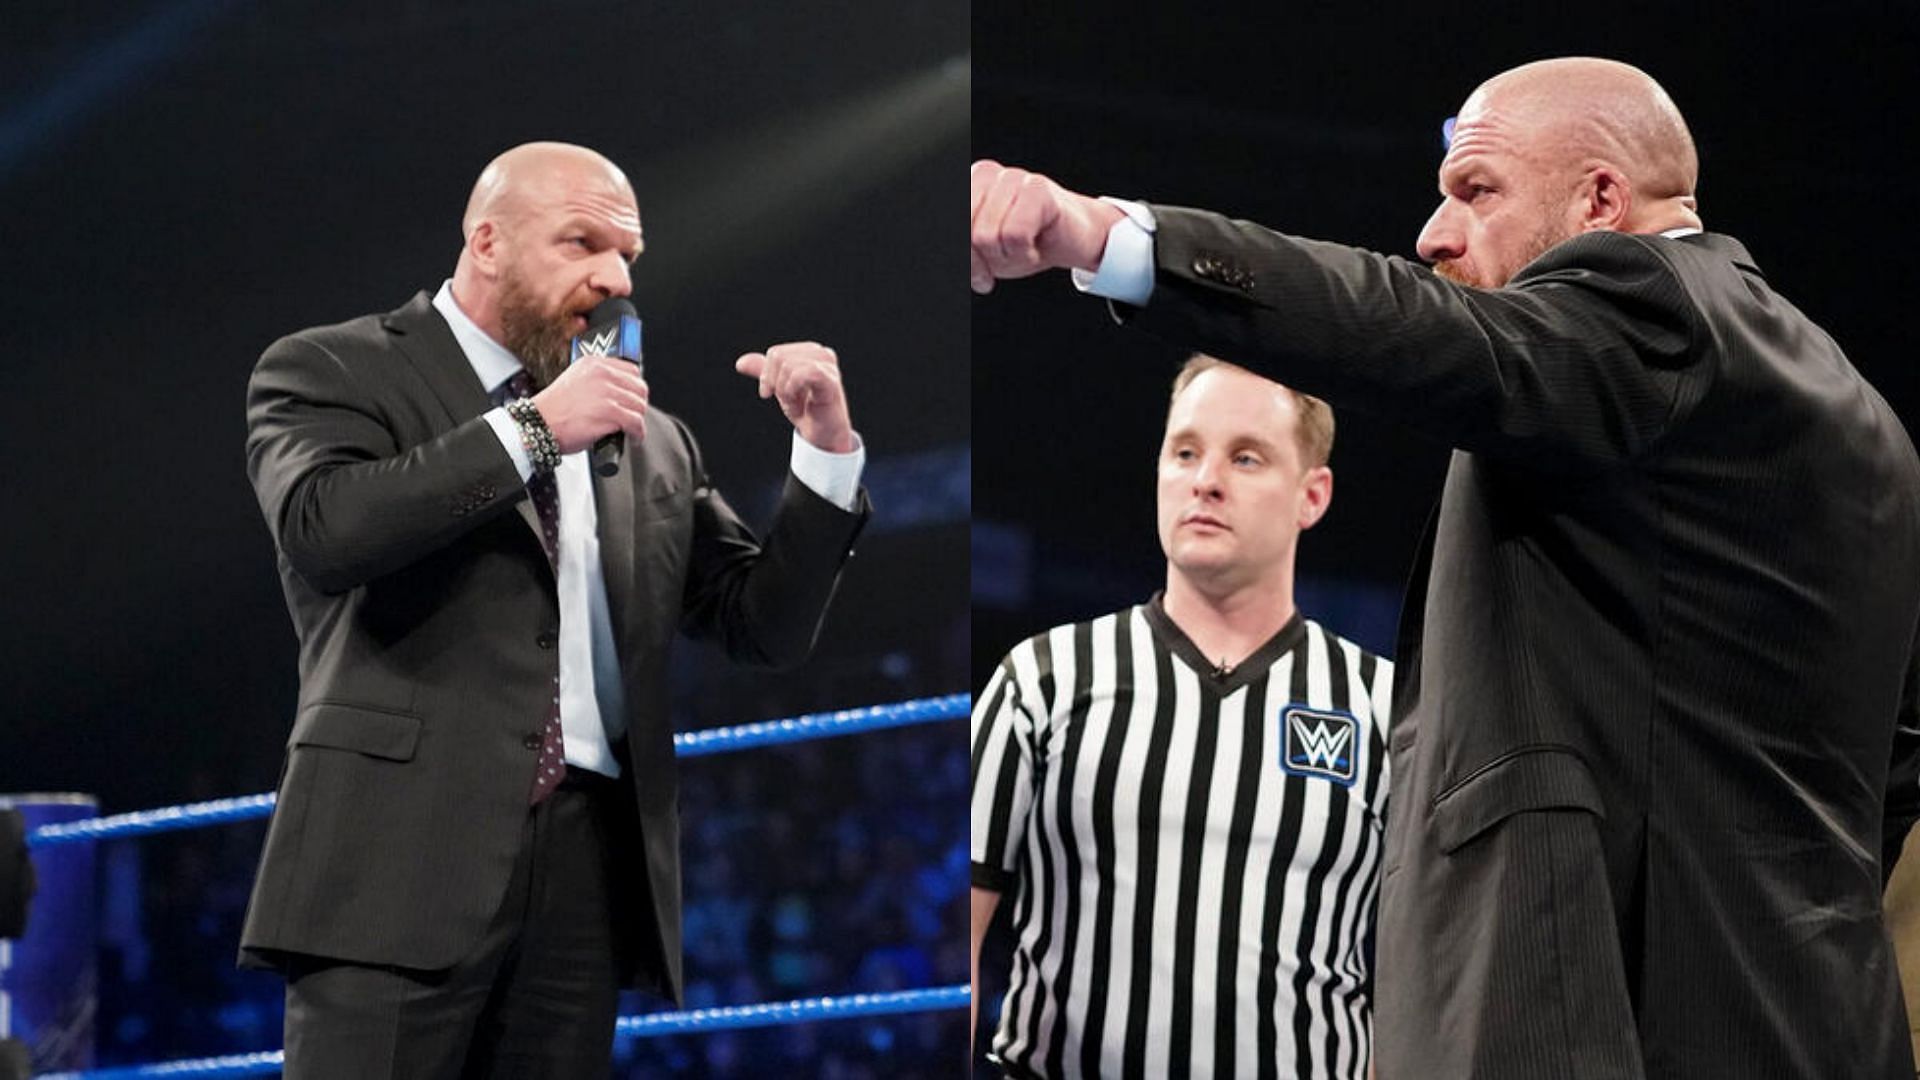 The star slapped Triple H across the facec